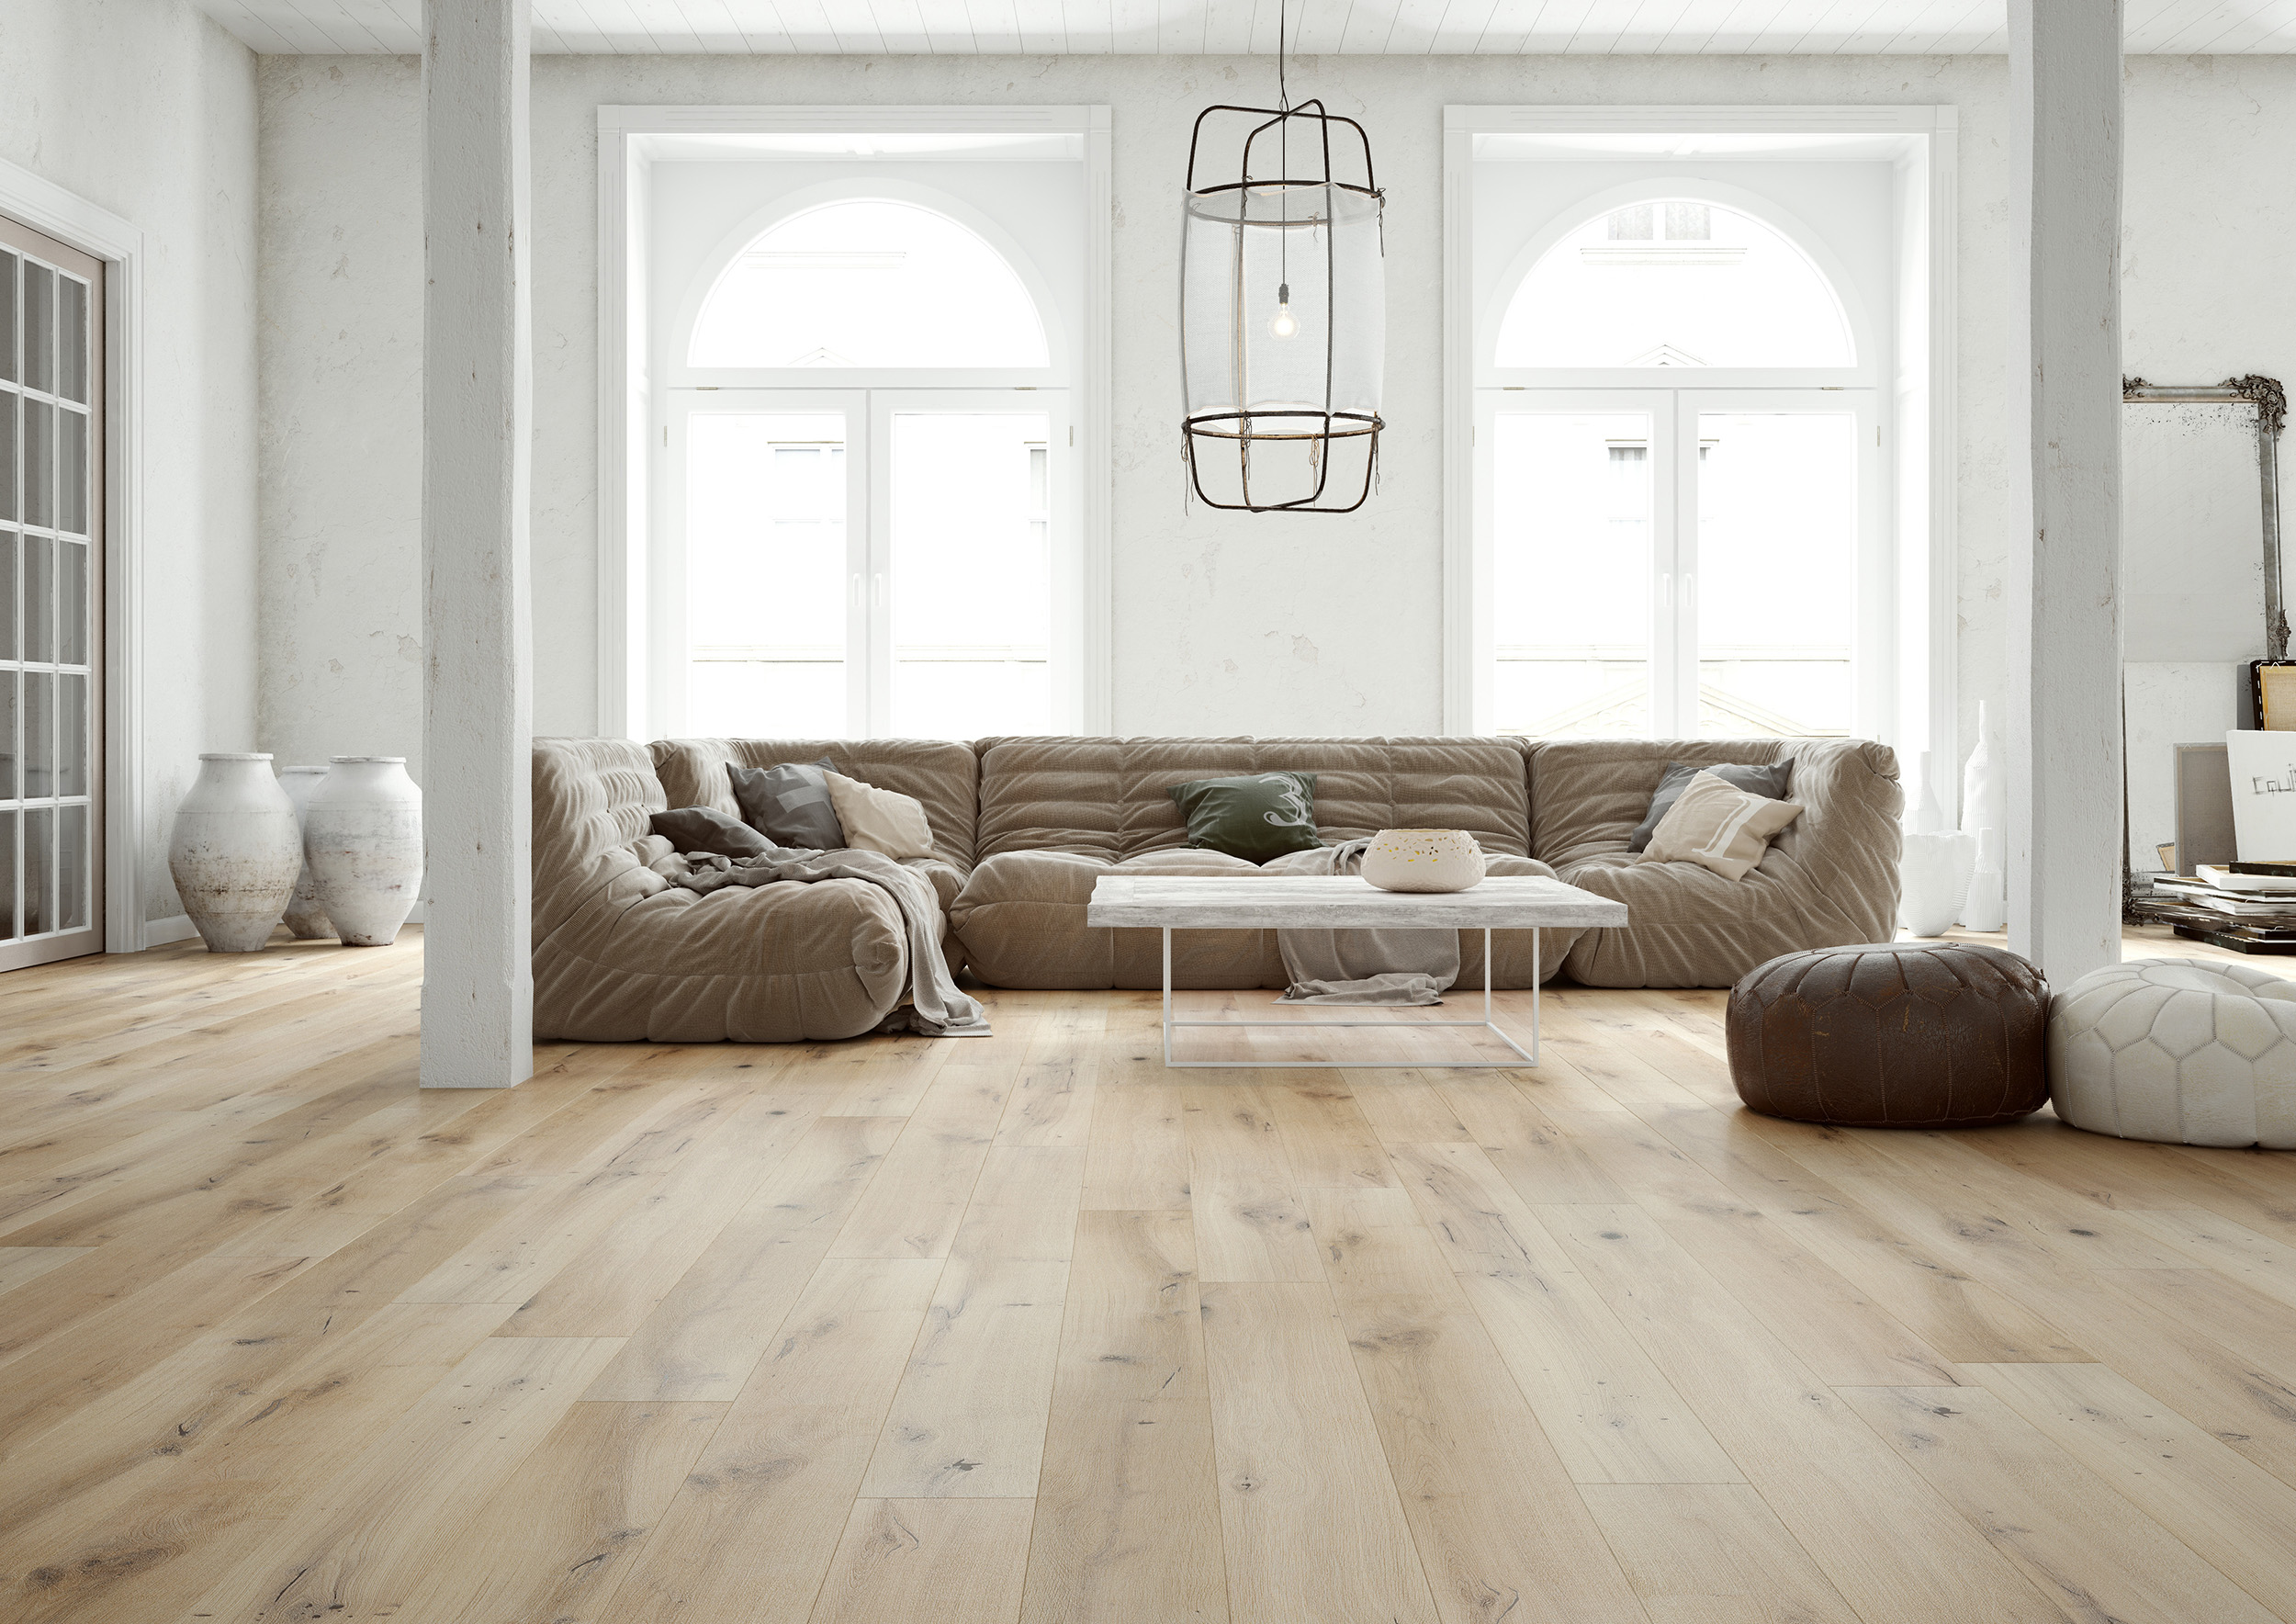 Light wood floors, light colored engineered wood flooring